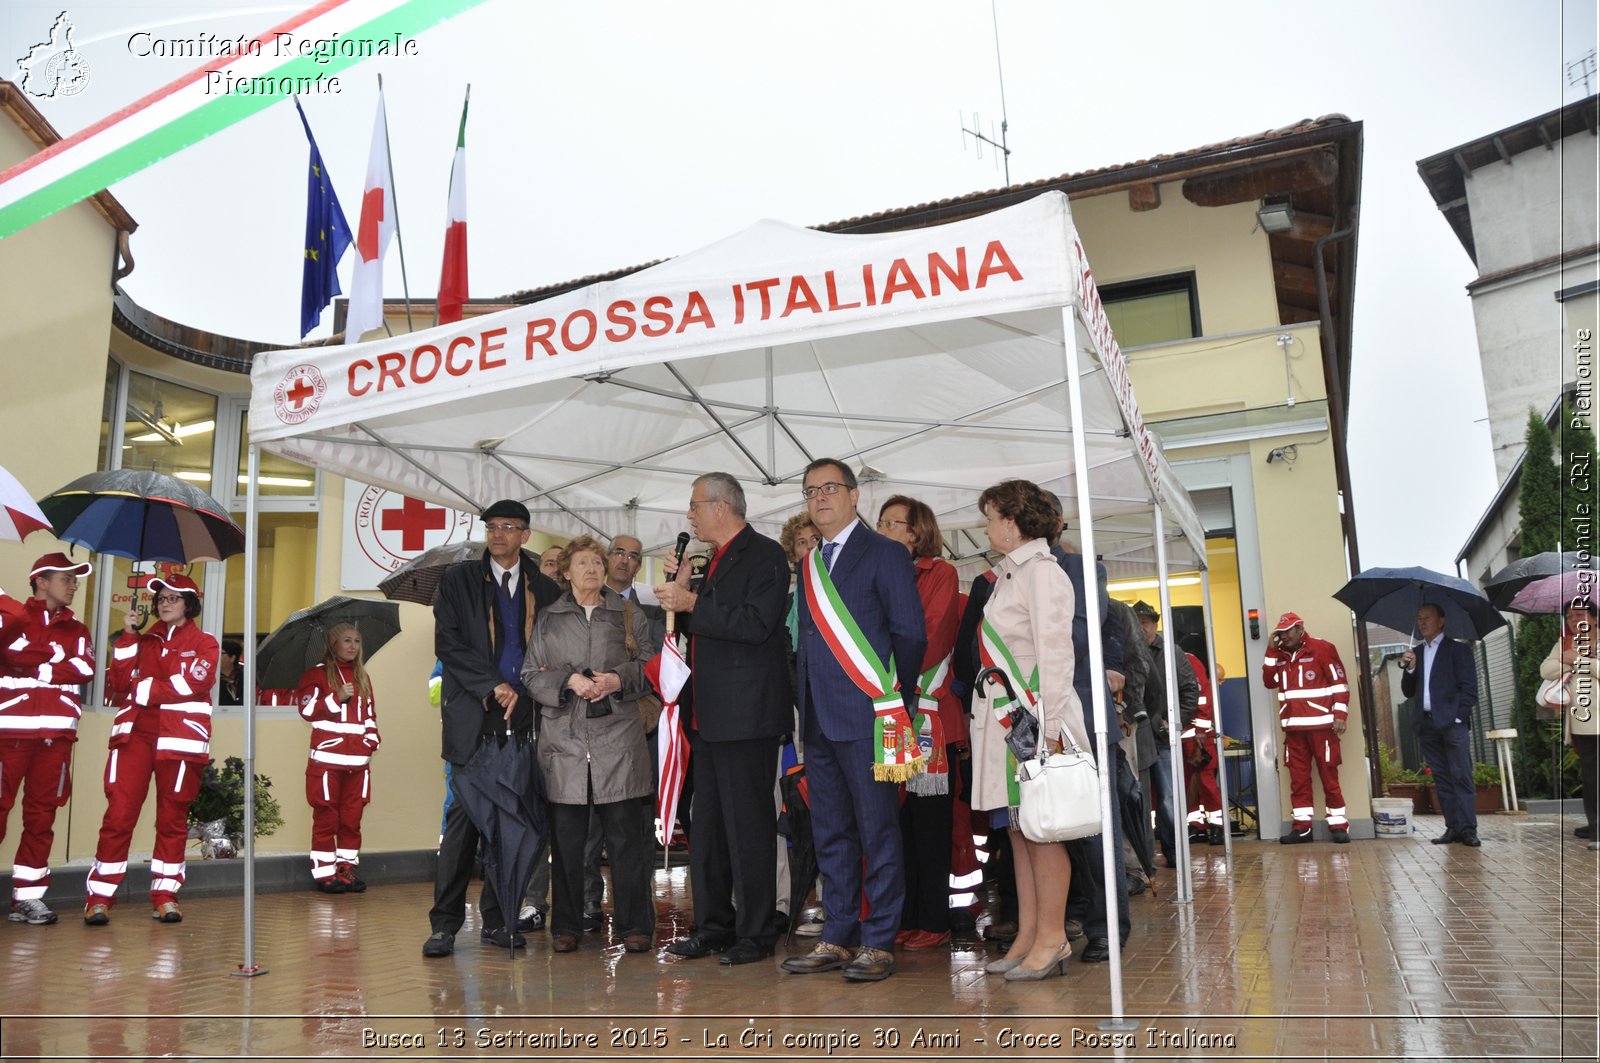 Busca 13 Settembre 2015 - La Cri compie 30 Anni - Croce Rossa Italiana- Comitato Regionale del Piemonte